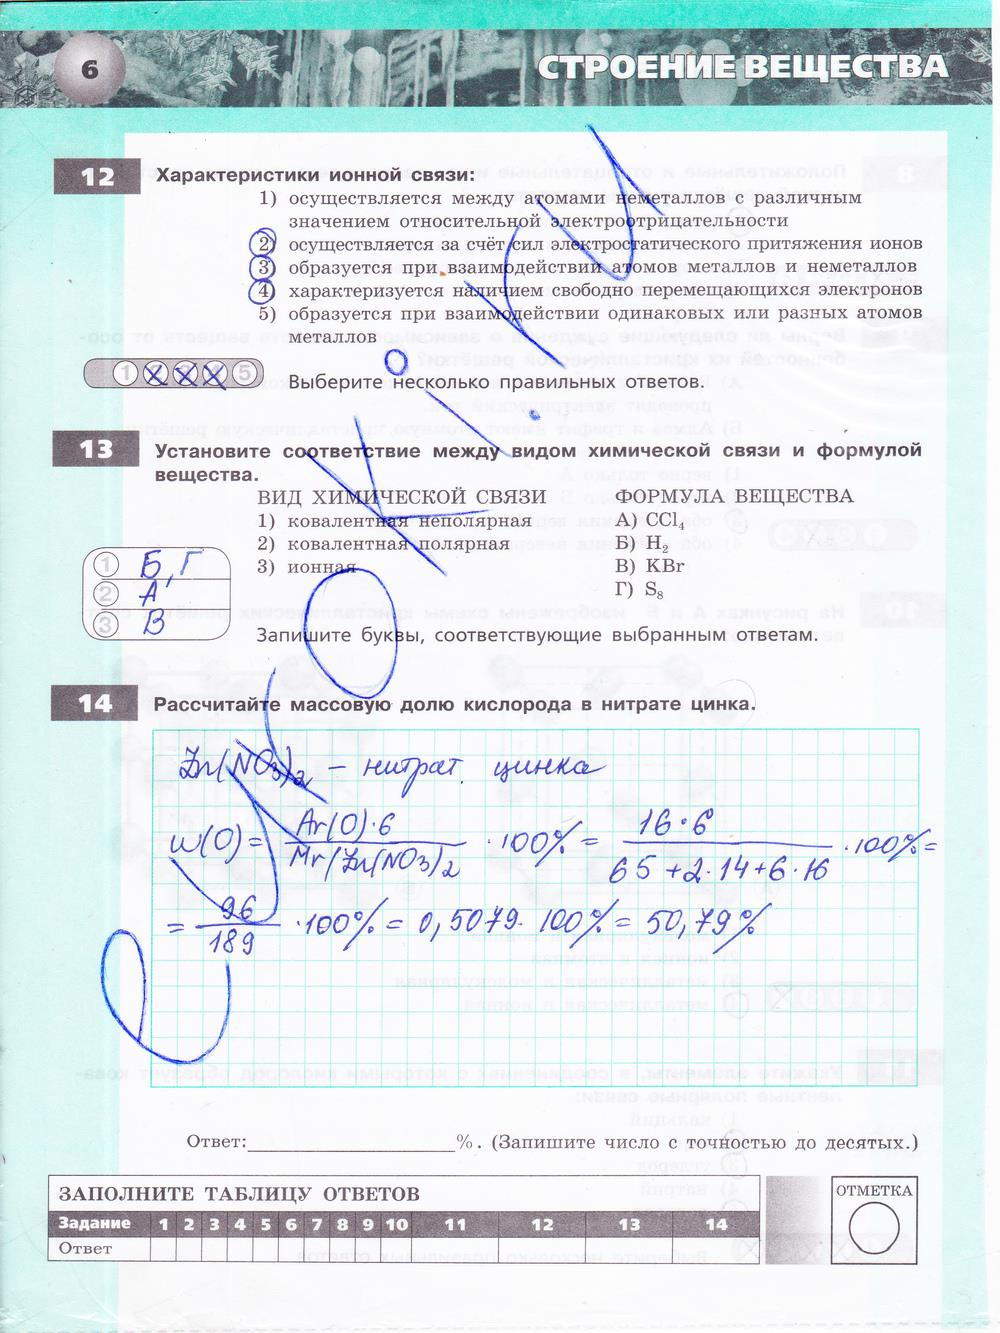 гдз 9 класс тетрадь-экзаменатор страница 6 химия Бобылева, Бирюлина